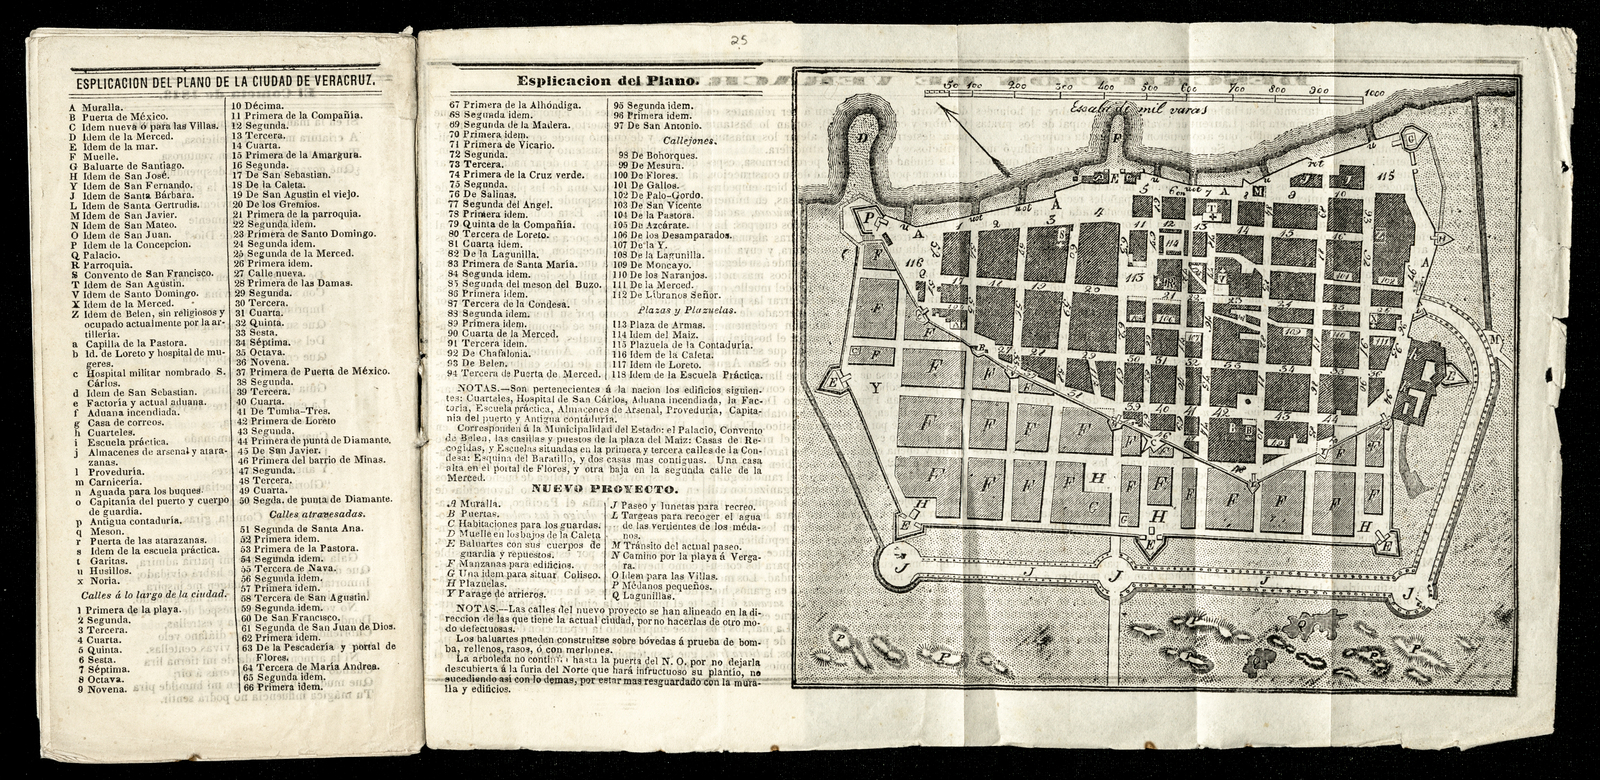 Noveno Calendario de Cumplido para 1844. Con el jubileo de la Ciudad de Puebla y foraneo